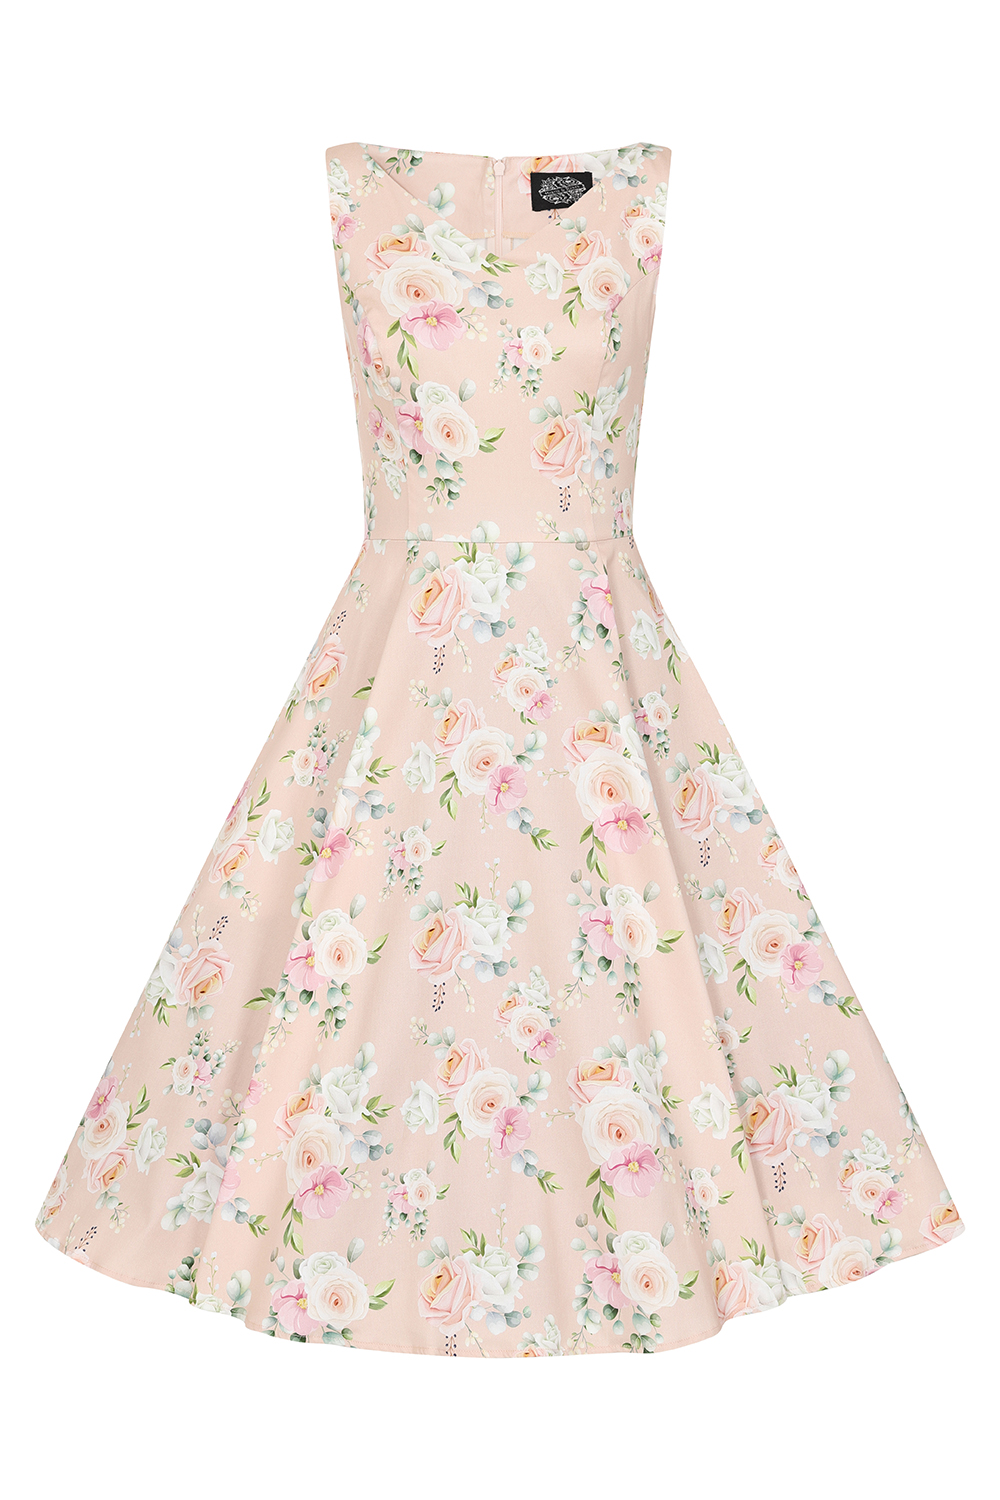 Lottie Floral Swing Dress